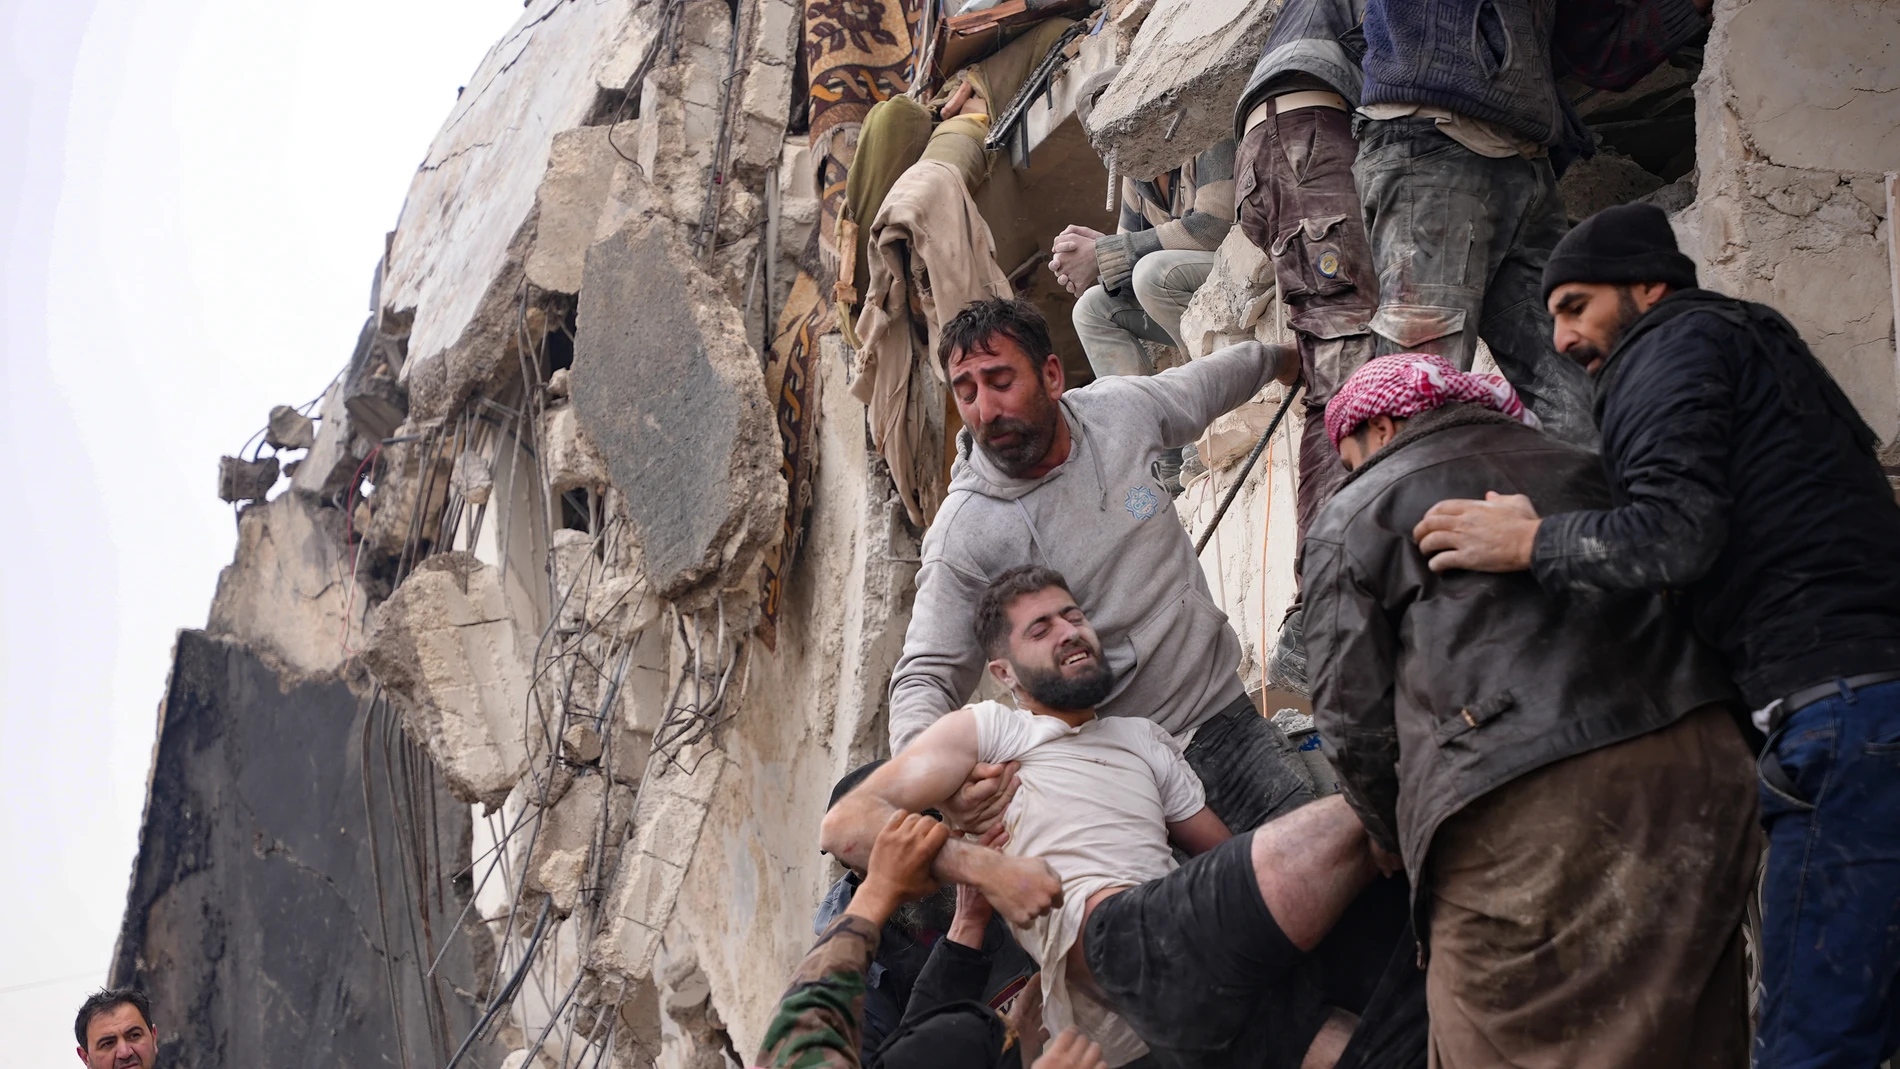 Vecinos rescatan a un superviviente entre los escombros de un edificio derrumbado en la ciudad de Jandaris, en Siria